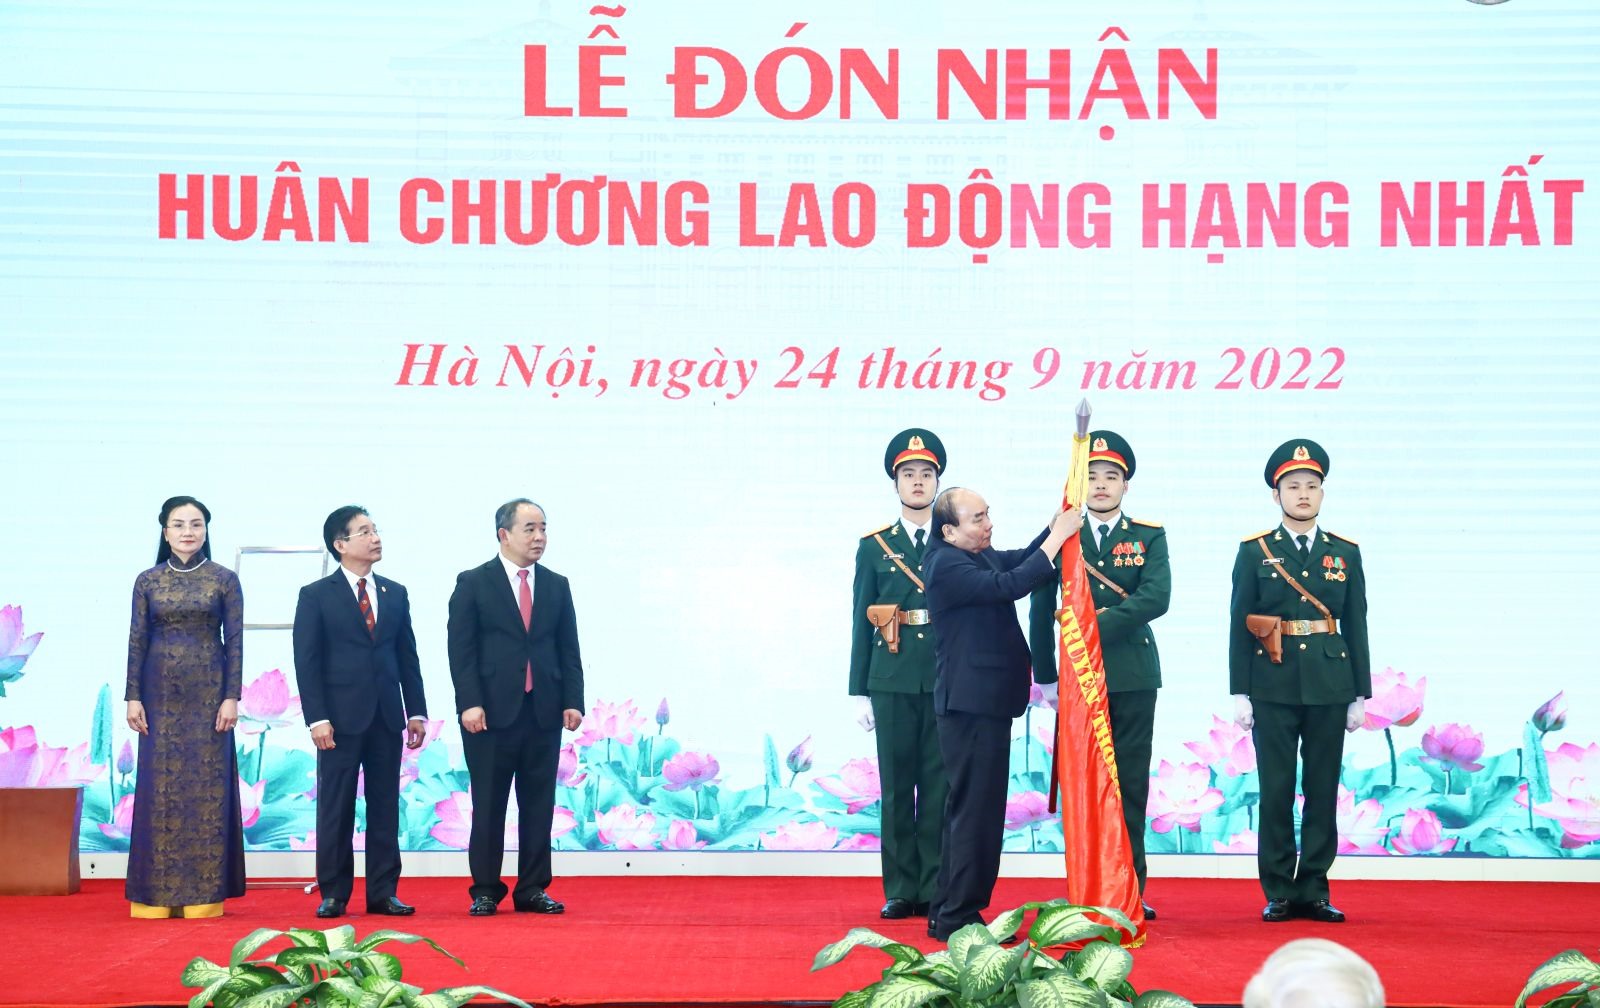 Chủ tịch nước Nguyễn Xuân Phúc gắn Huân chương Lao động hạng Nhất lên lá cờ truyền thống của Văn phòng Chủ tịch nước. Ảnh: VPCTN